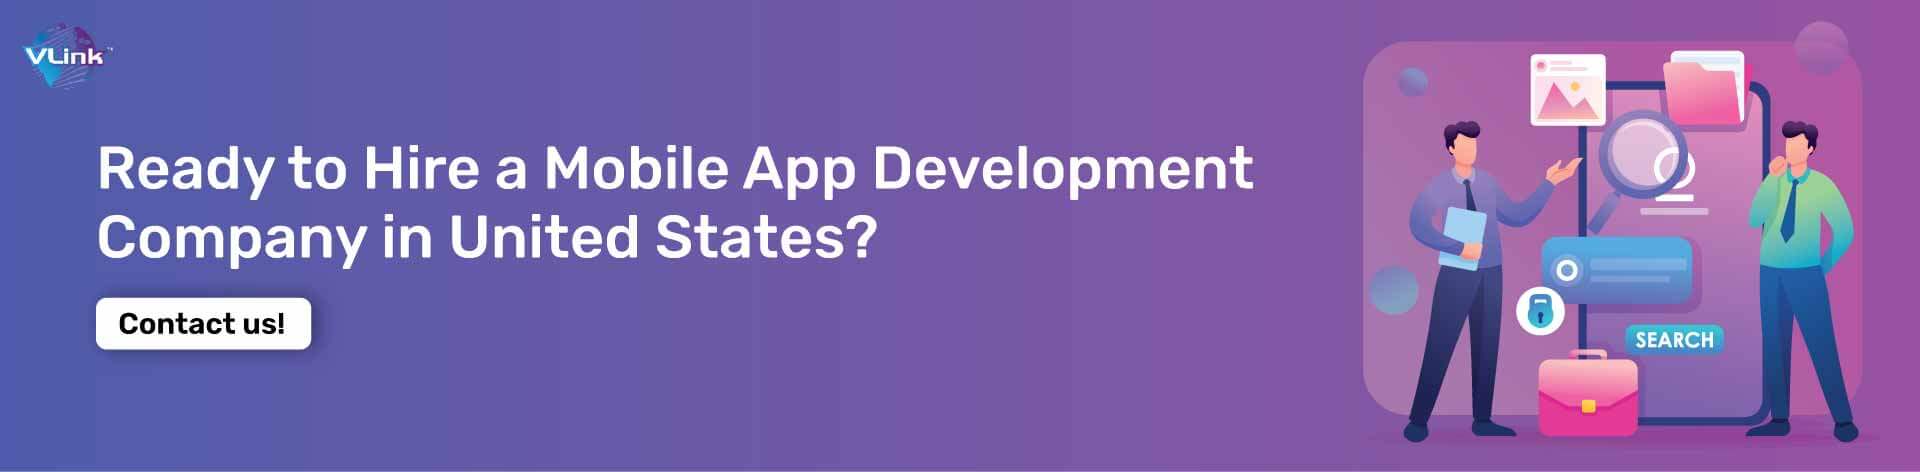 mobile-app-development-company-in-united-states-cta